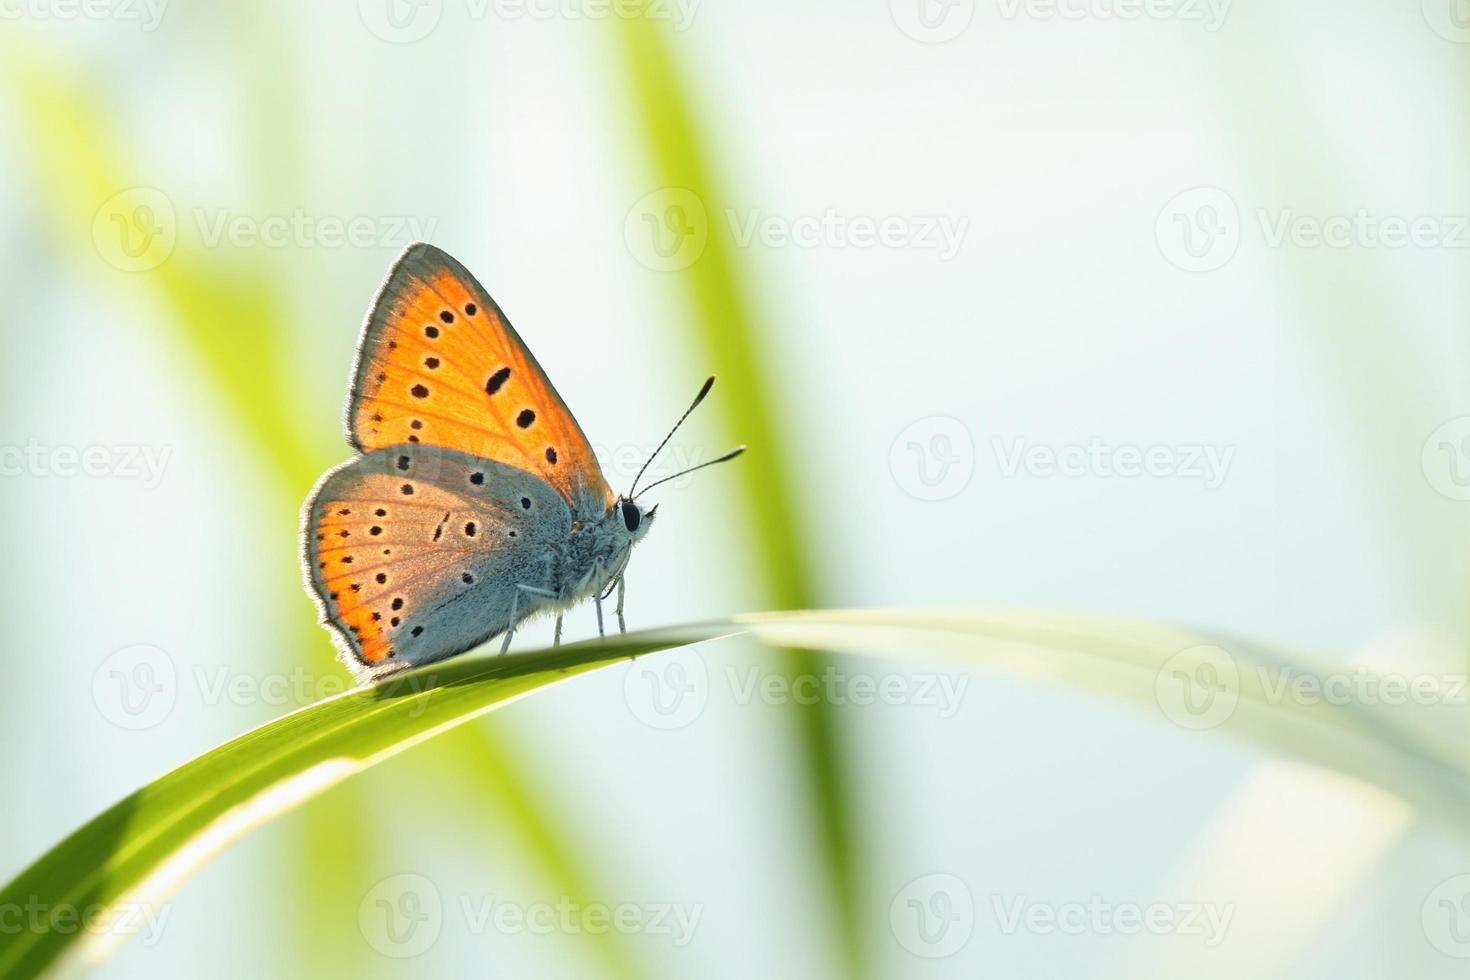 gros plan d'un papillon photo